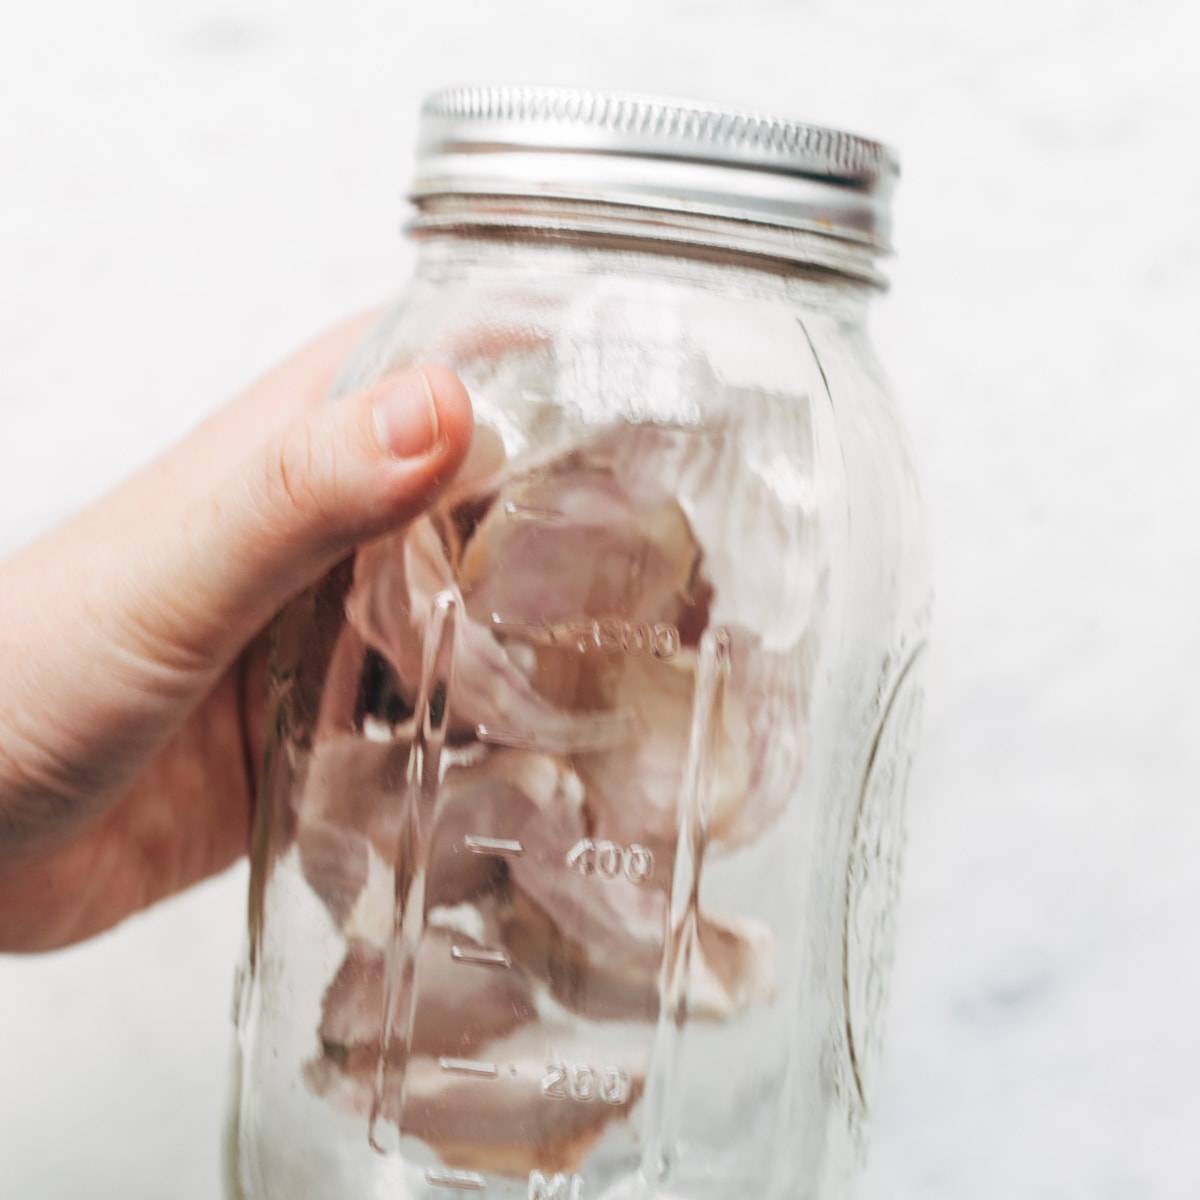 A hand holds a jar of garlic cloves.